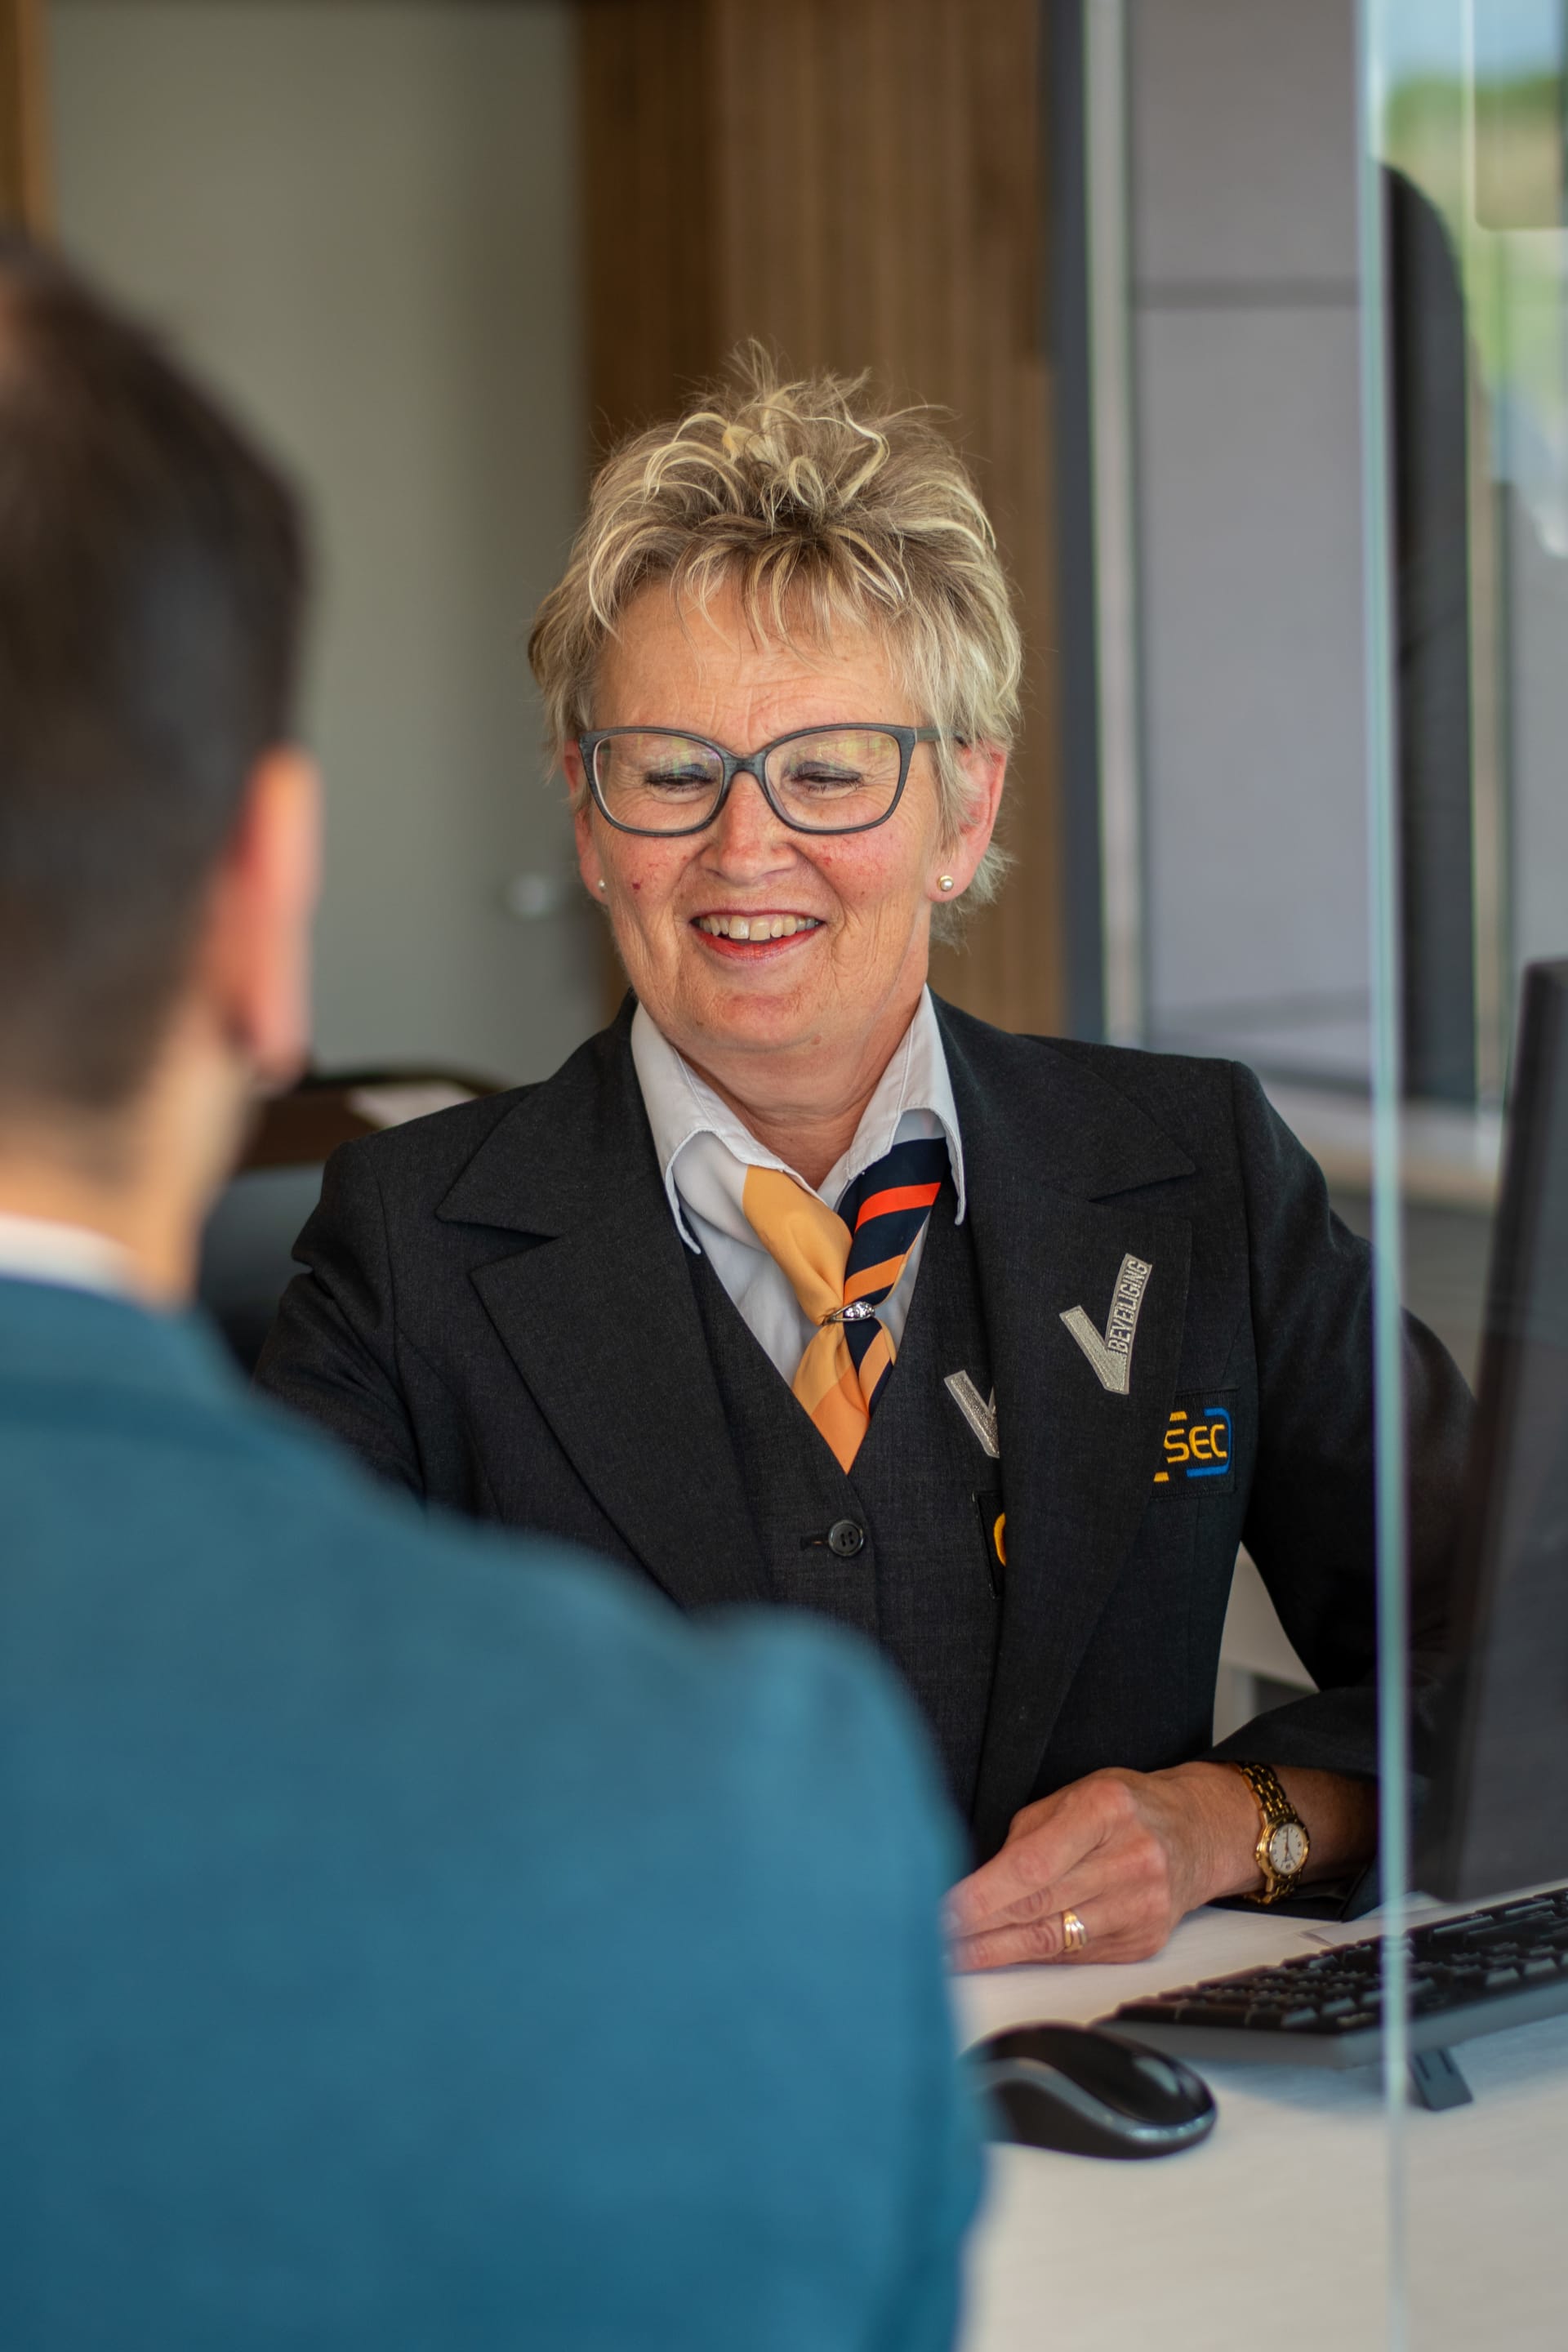 Vrouwelijke luchthavenmedewerker van I-SEC met een sjaaltje glimlachend binnen in een kantoor